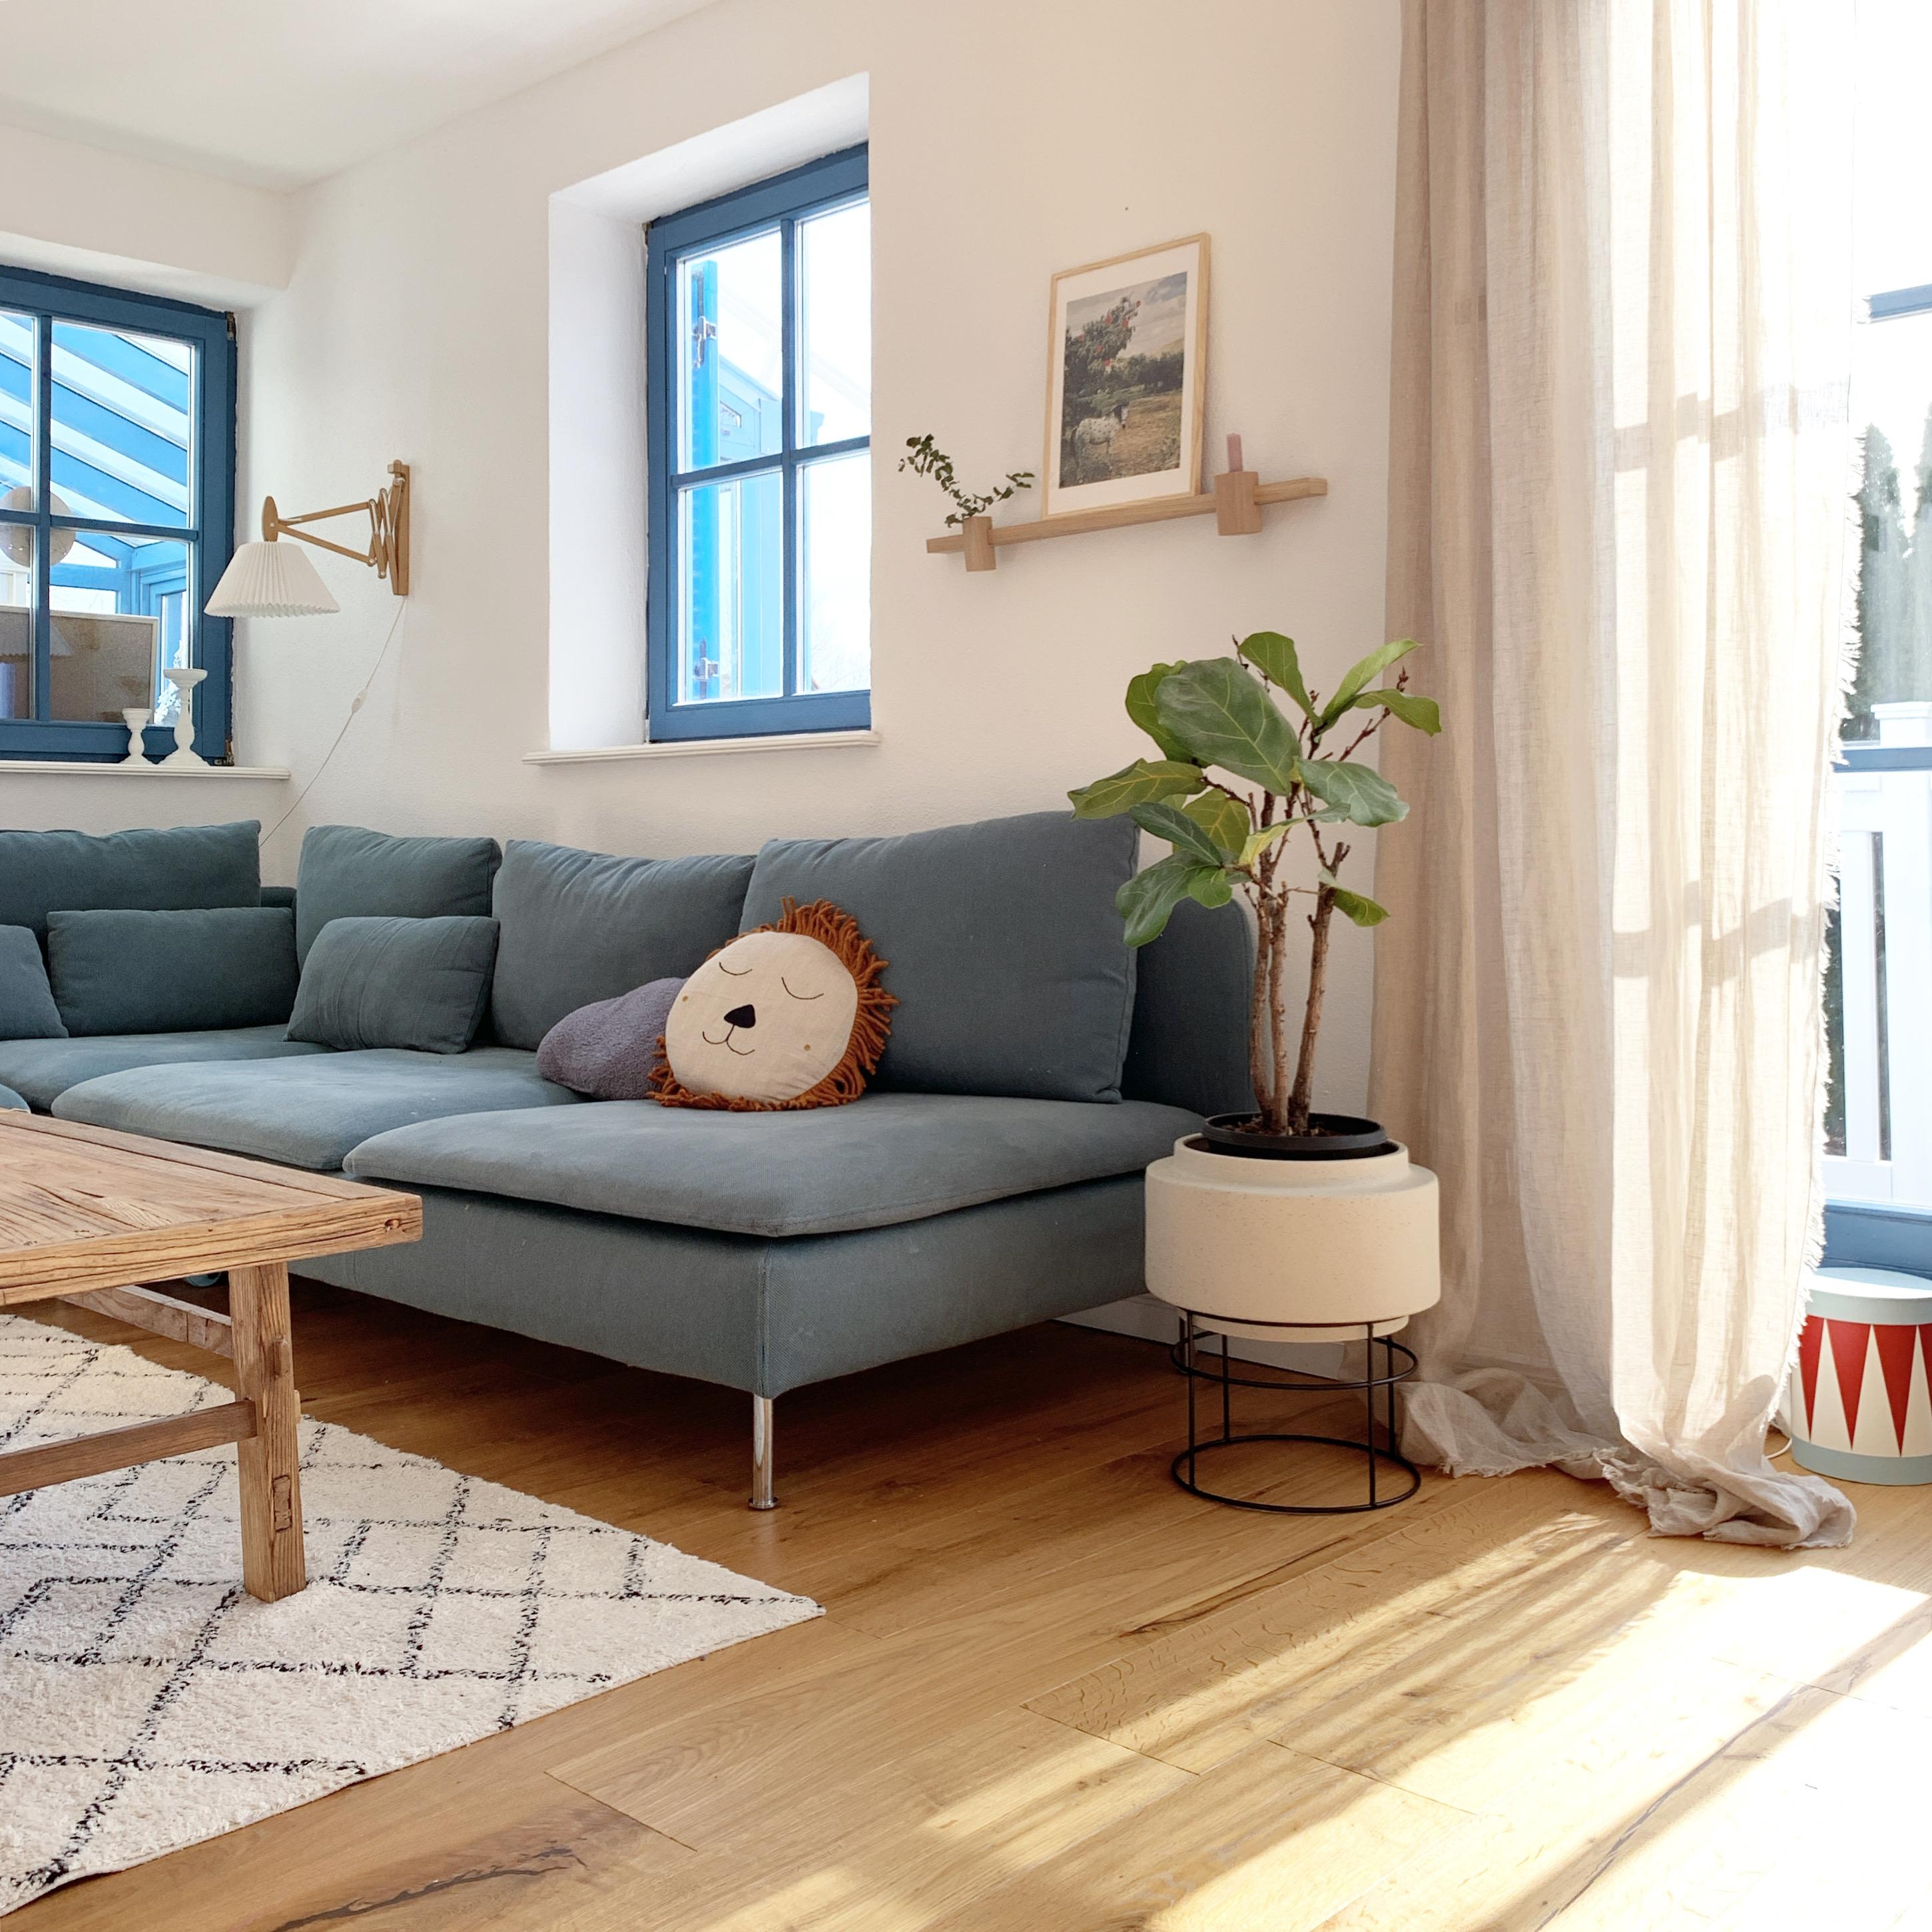 Bei sechs Personen braucht man einfach ein großes Sofa! 
#livingchallenge #sofaecke #wohnzimmer #livingroom